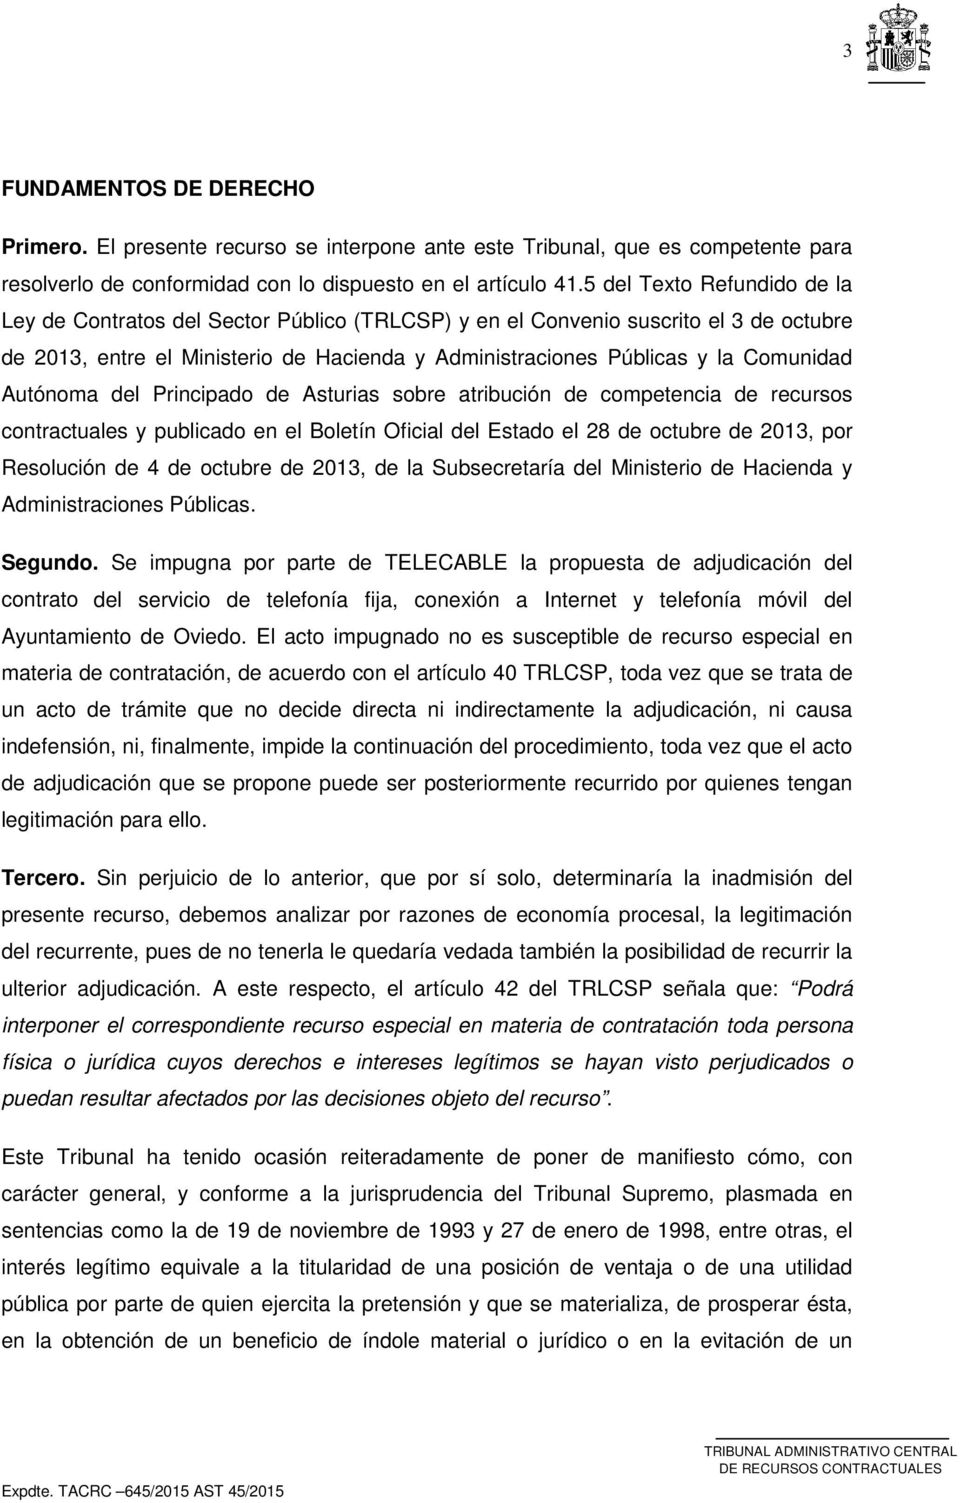 Autónoma del Principado de Asturias sobre atribución de competencia de recursos contractuales y publicado en el Boletín Oficial del Estado el 28 de octubre de 2013, por Resolución de 4 de octubre de